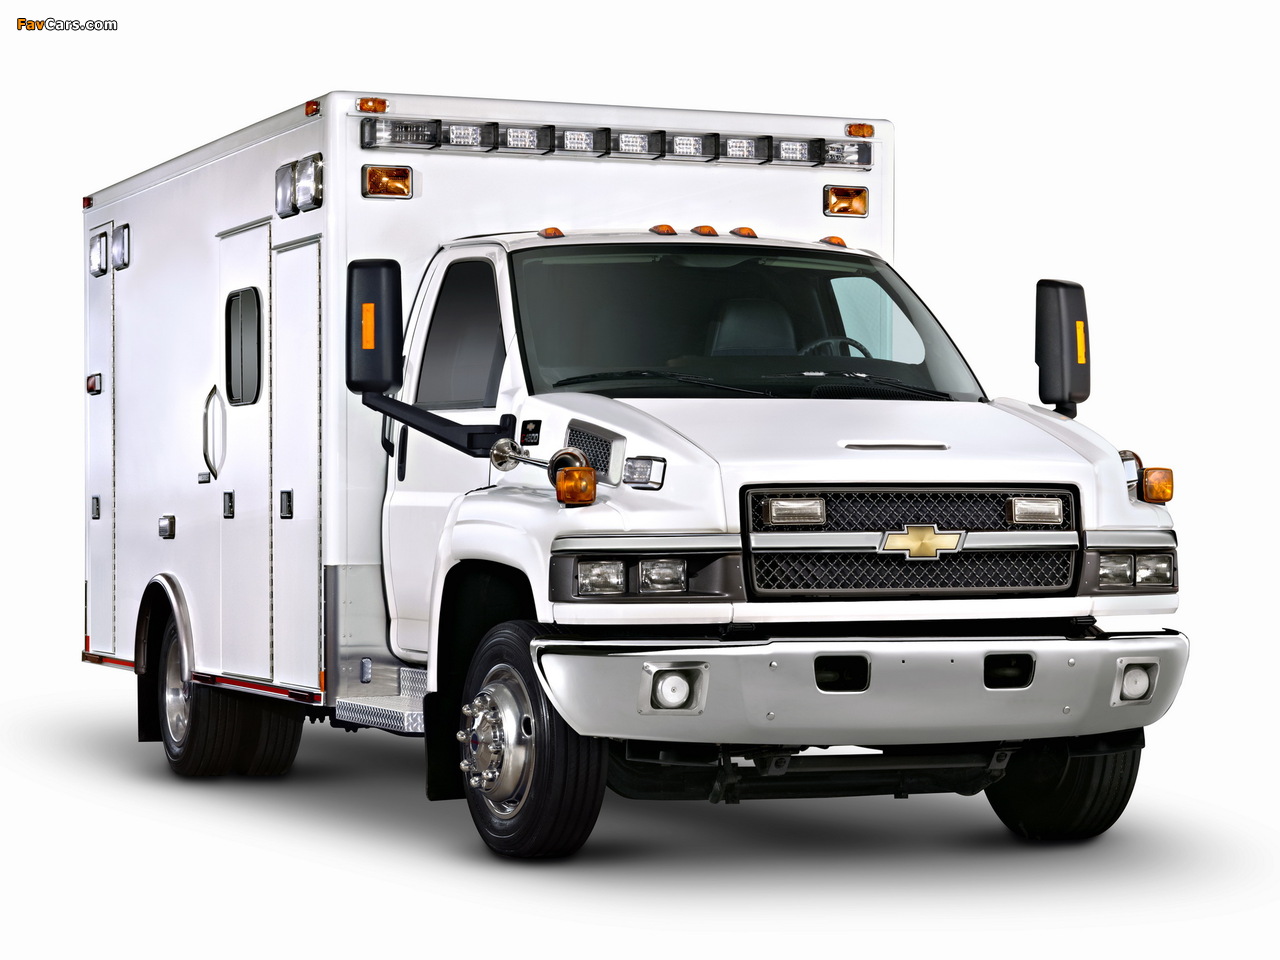 Chevrolet Express C4500 Ambulance 2010 photos (1280 x 960)